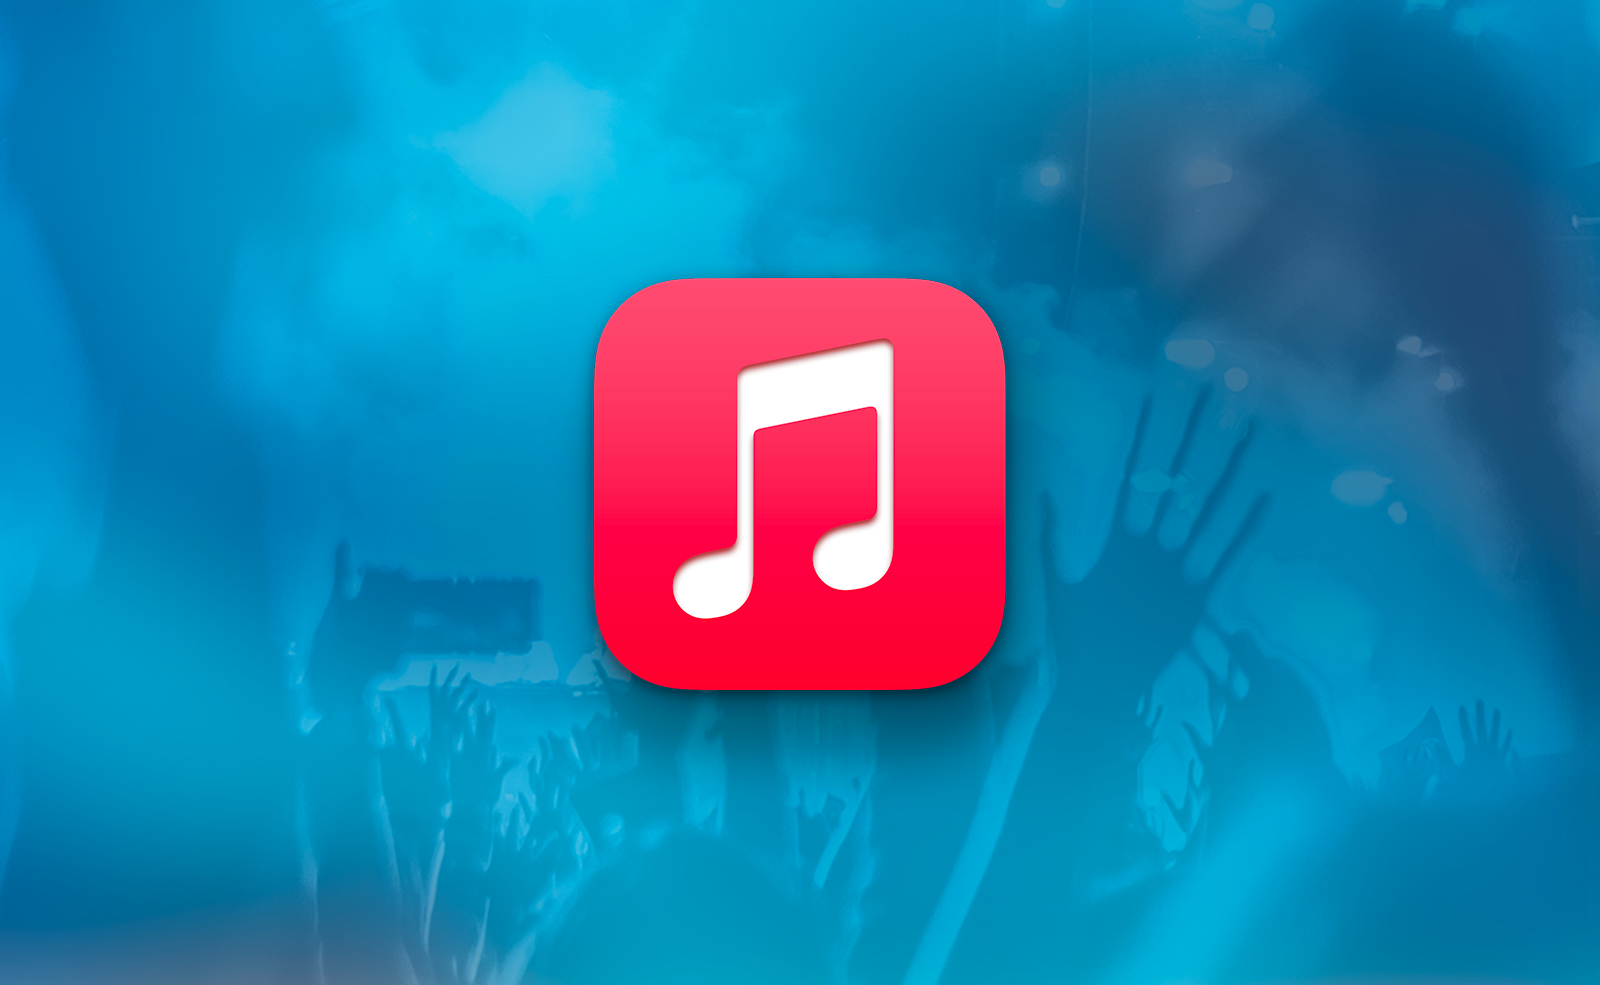 macOS • Organisez les titres de votre bibliothèque musicale 